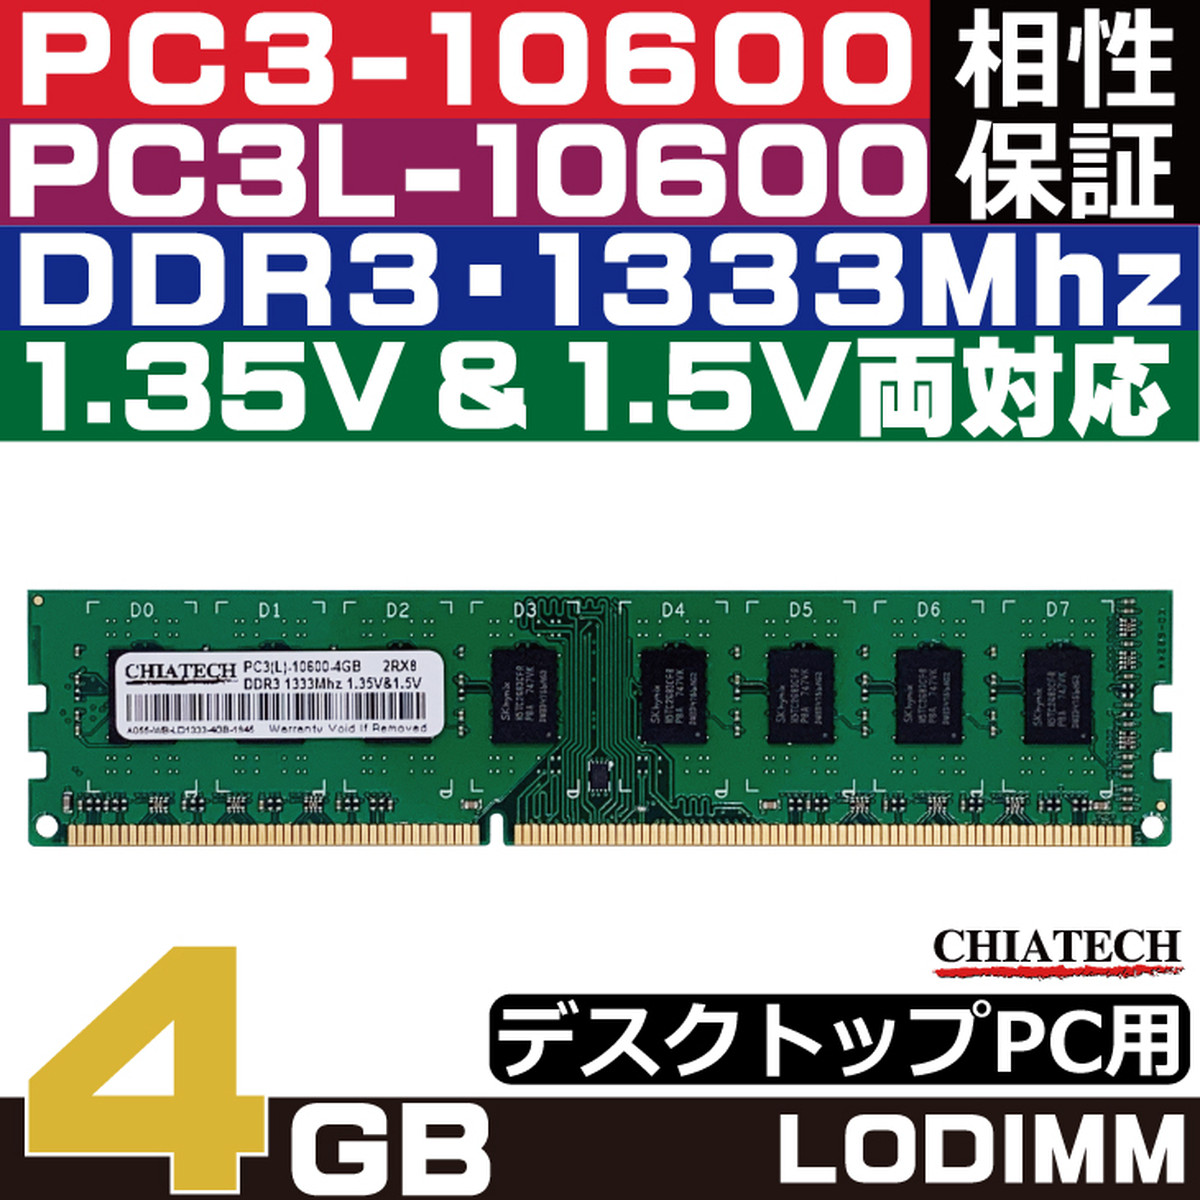 A055 Chiatech メモリ Wb Ld1333 4gb 4gb X 1枚 Pc3 Ddr3 1333mhz Lo Dimm デスクトップパソコン用 Pc3 Ddr3 1333 Chiatech